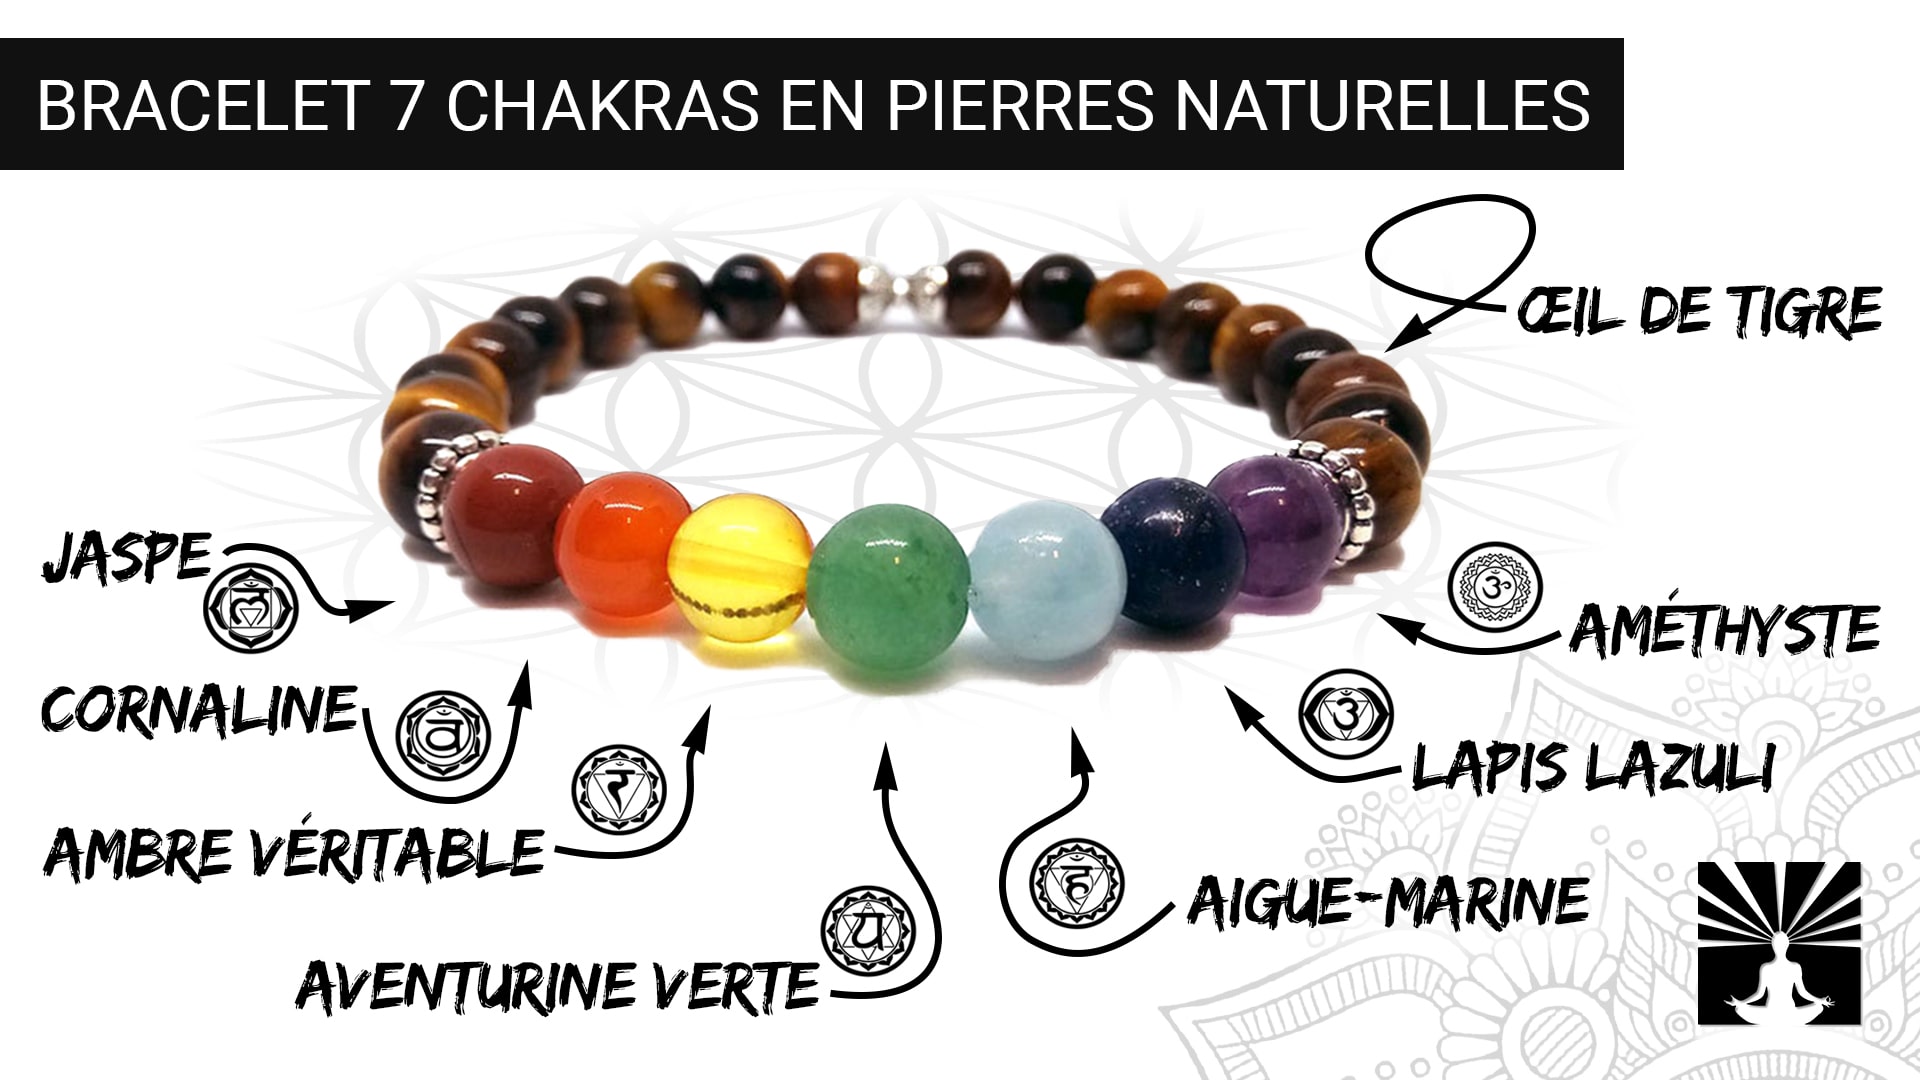 Véritable Bracelet 7 Chakras - Pierres Naturelles